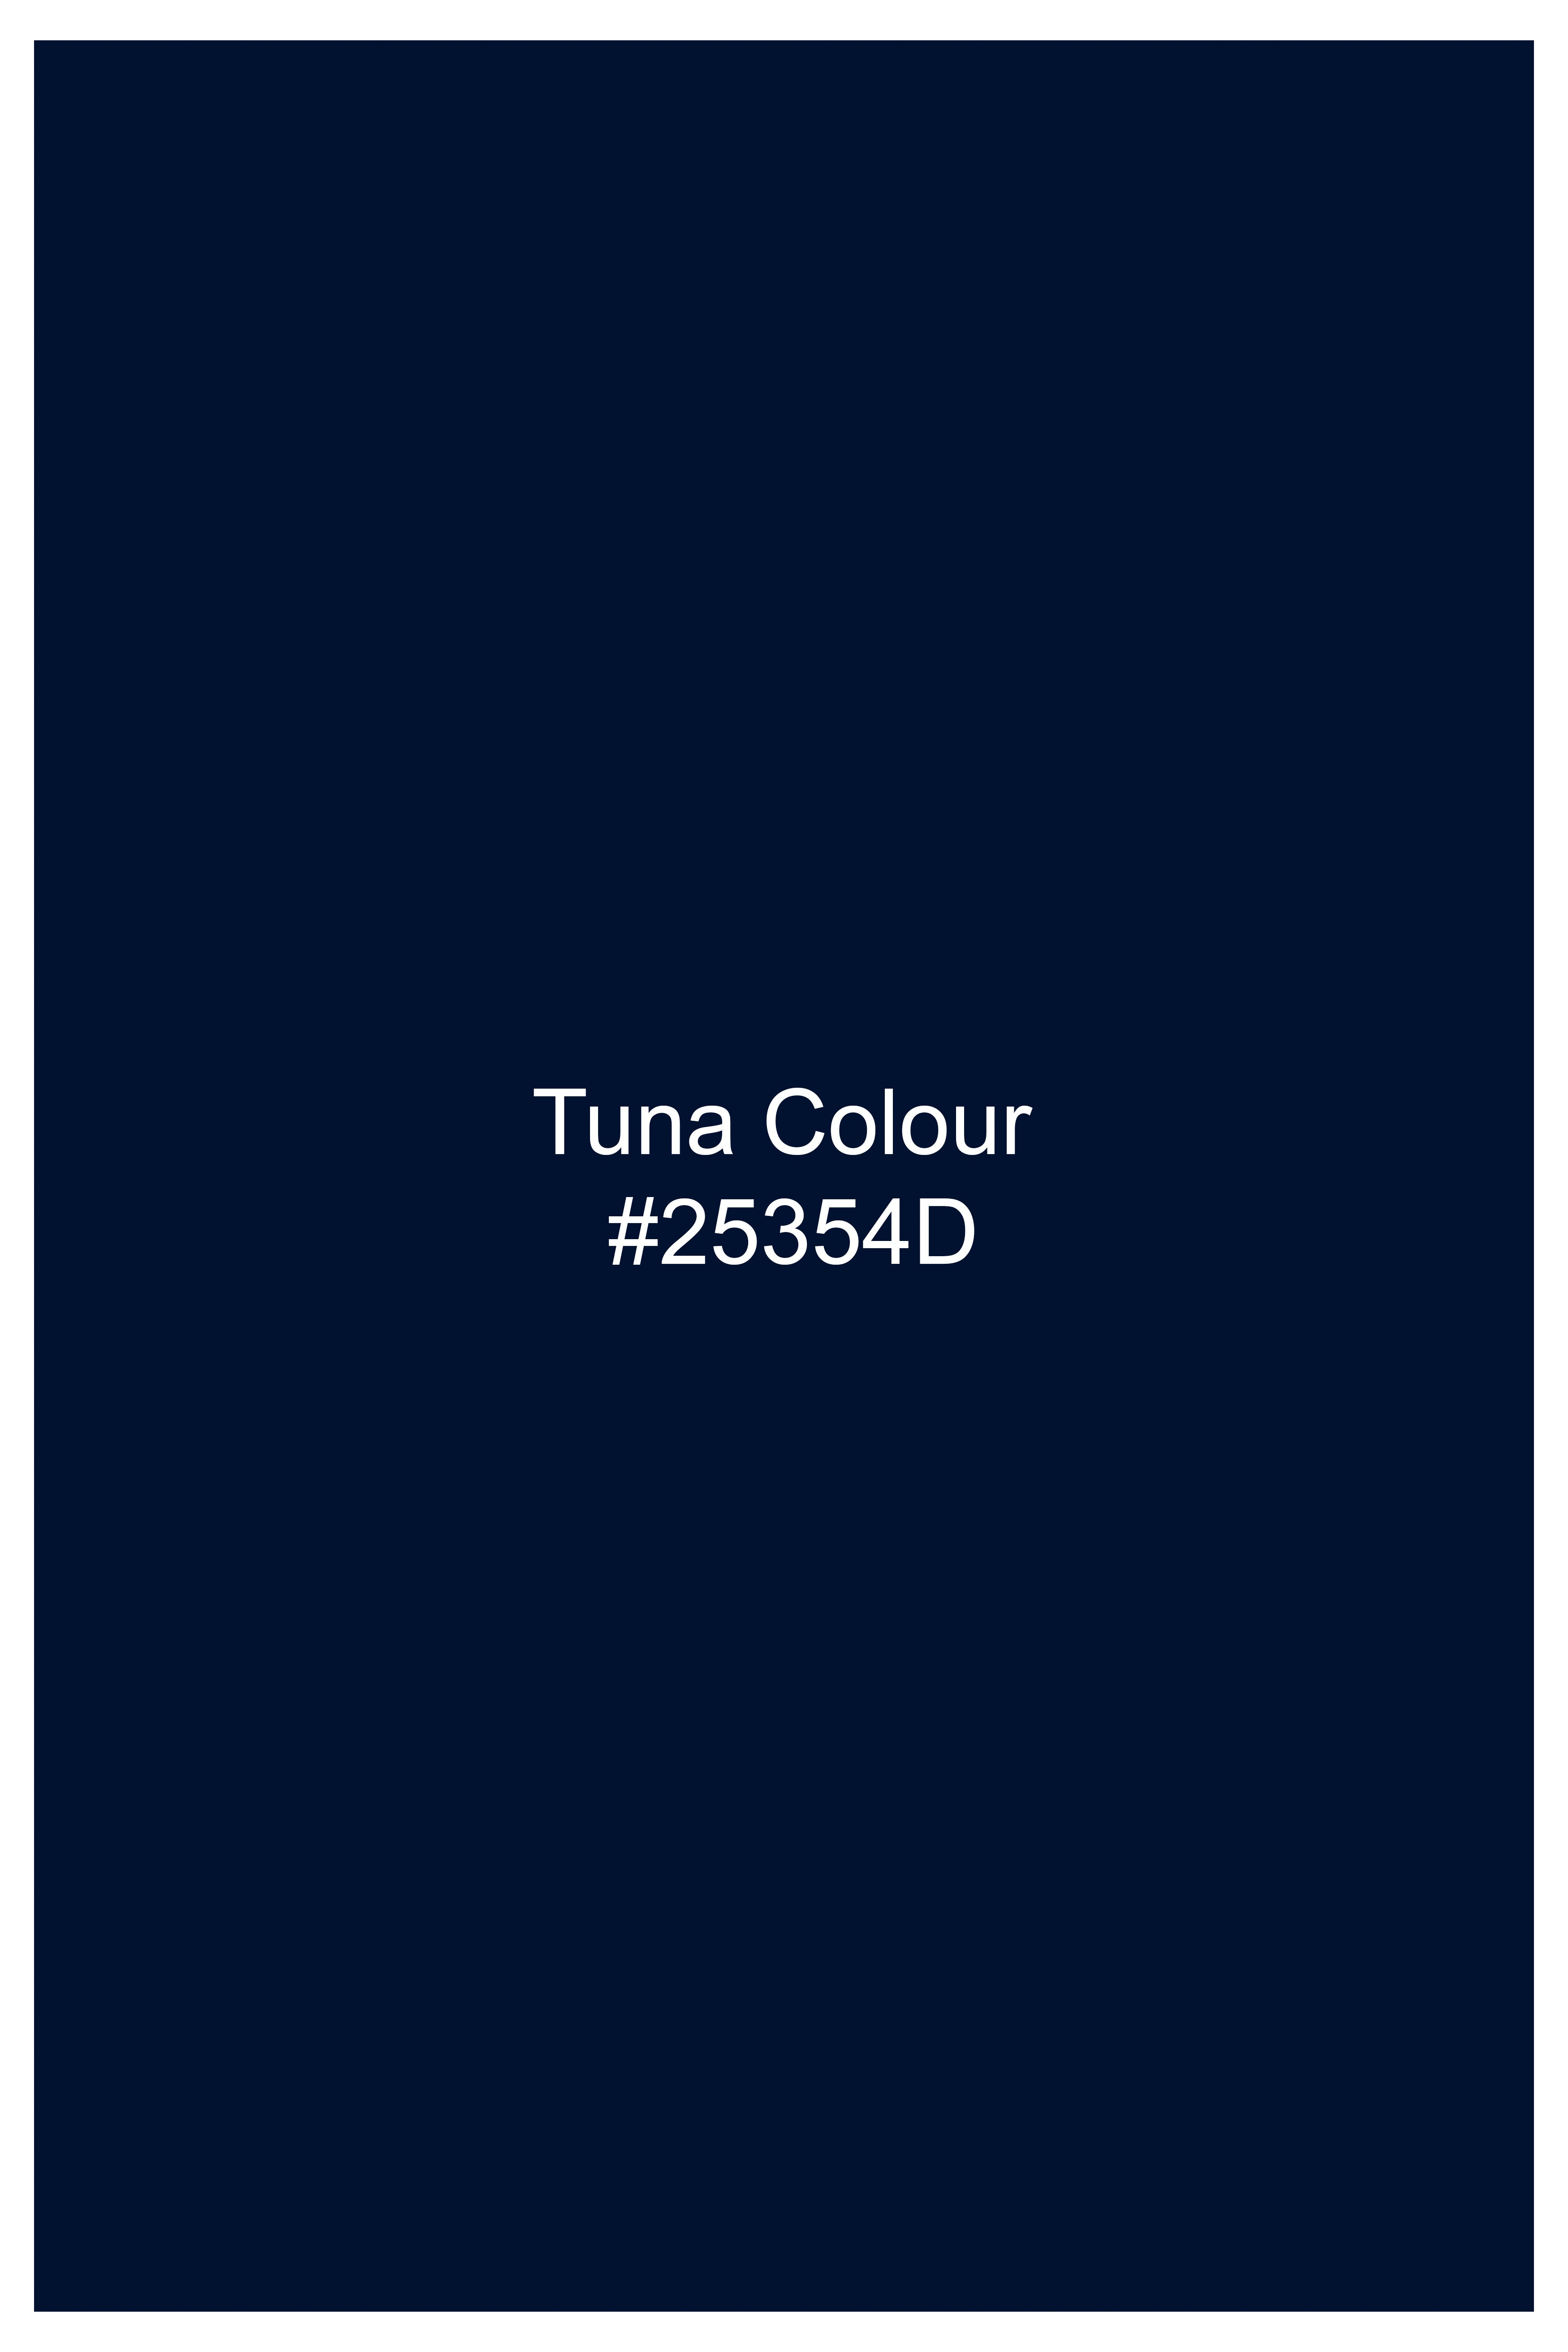 Tuna Blue Wool Rich Waistcoat V2762-36, V2762-38, V2762-40, V2762-42, V2762-44, V2762-46, V2762-48, V2762-50, V2762-52, V2762-54, V2762-56, V2762-58, V2762-60